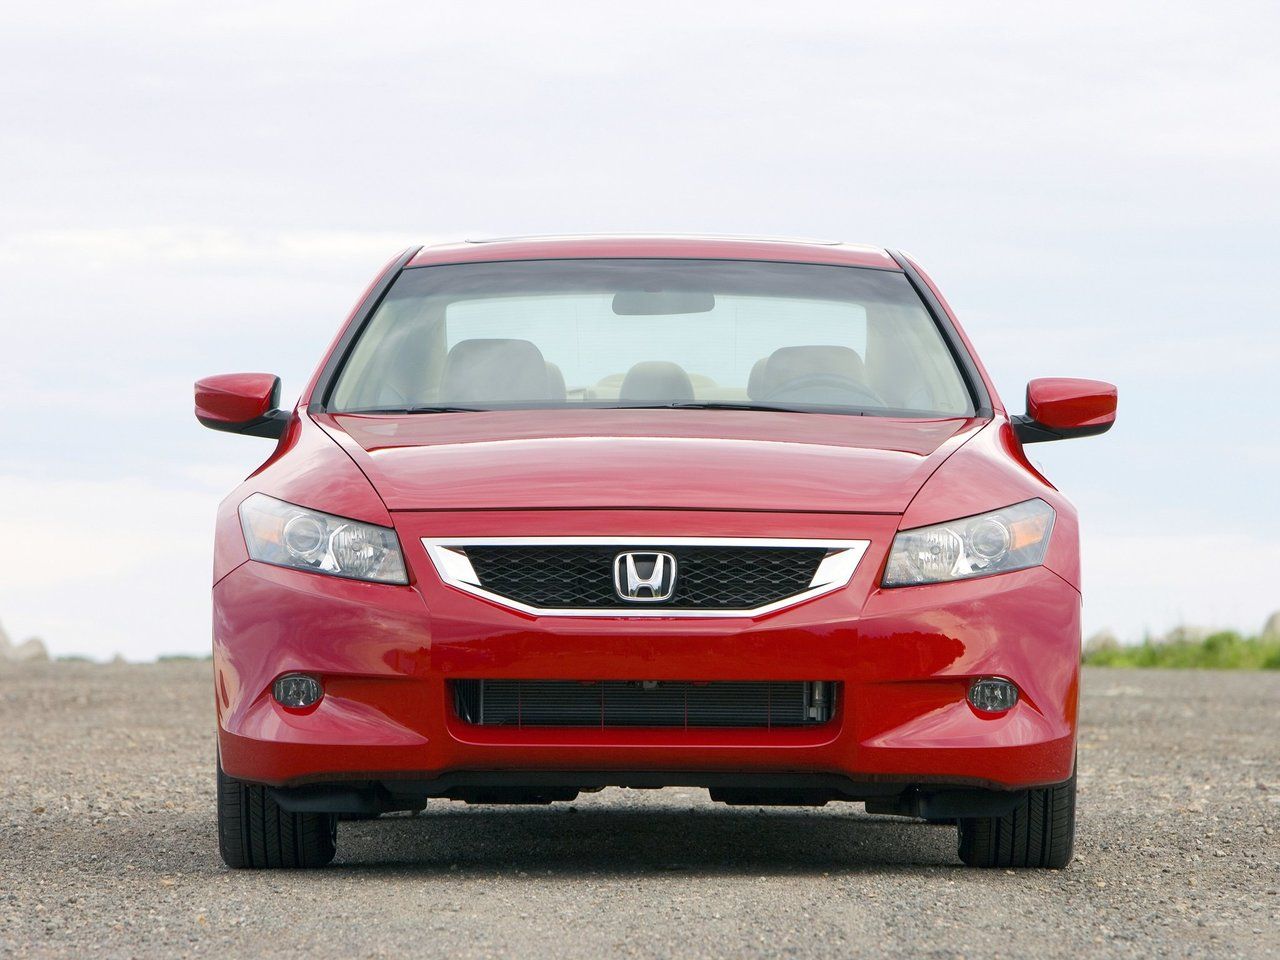 Honda модели автомобилей с фото и названиями